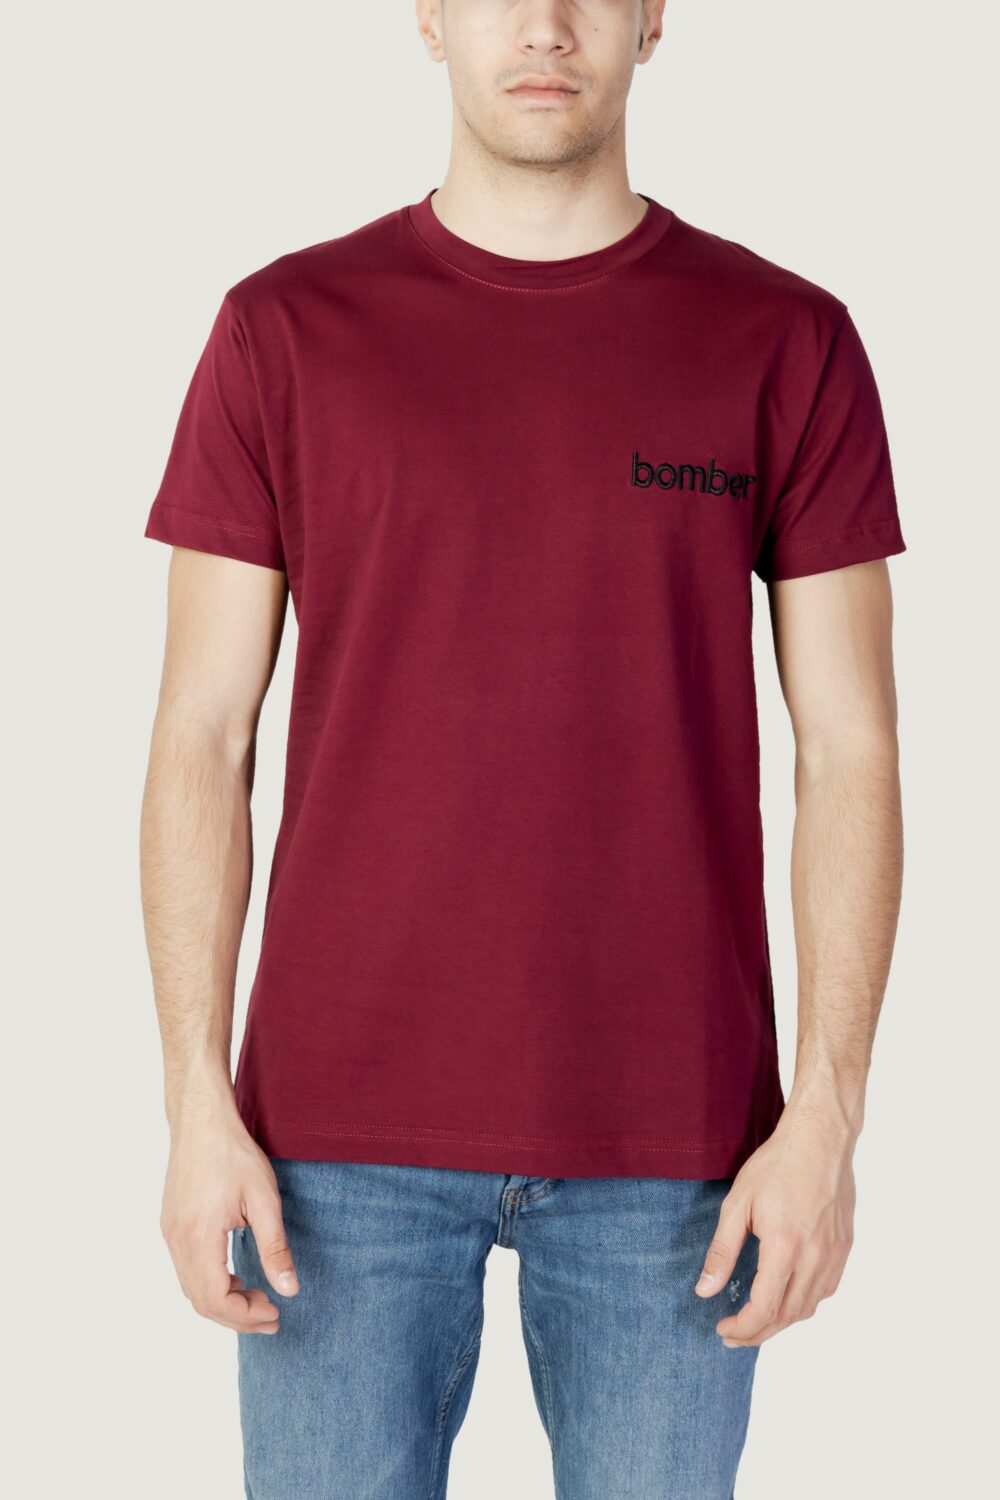 T-shirt The Bomber LOGO Bordeaux - Foto 1